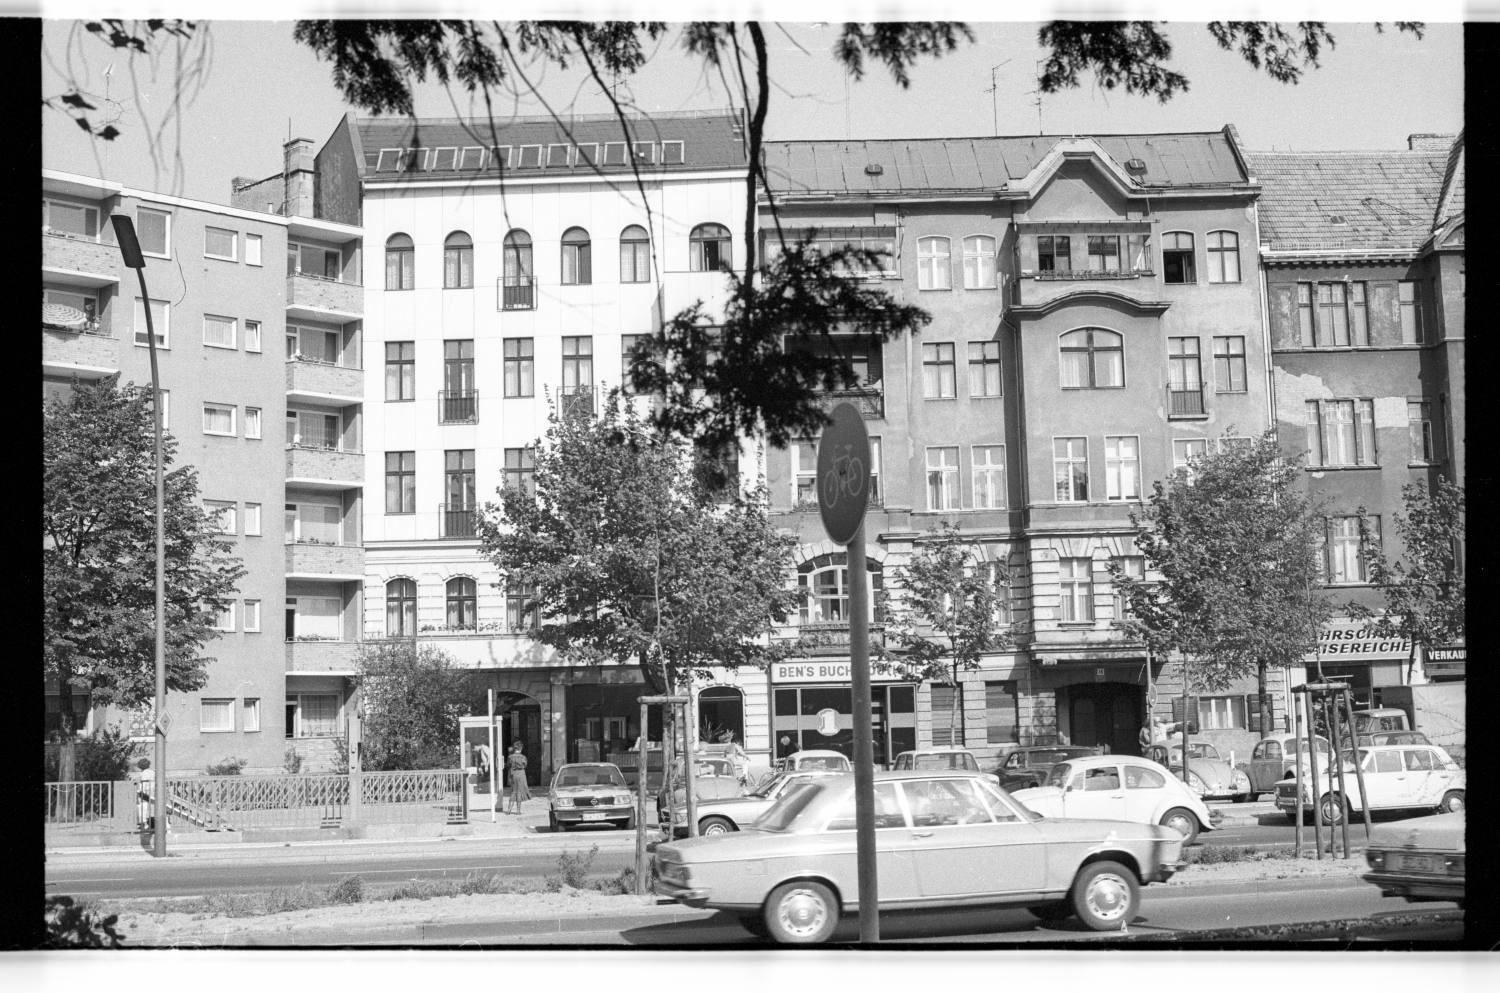 Kleinbildnegative: Friedrich-Wilhelm-Platz mit Straßenansicht, Kirche und Bushaltestelle, 1978 (Museen Tempelhof-Schöneberg/Jürgen Henschel RR-F)